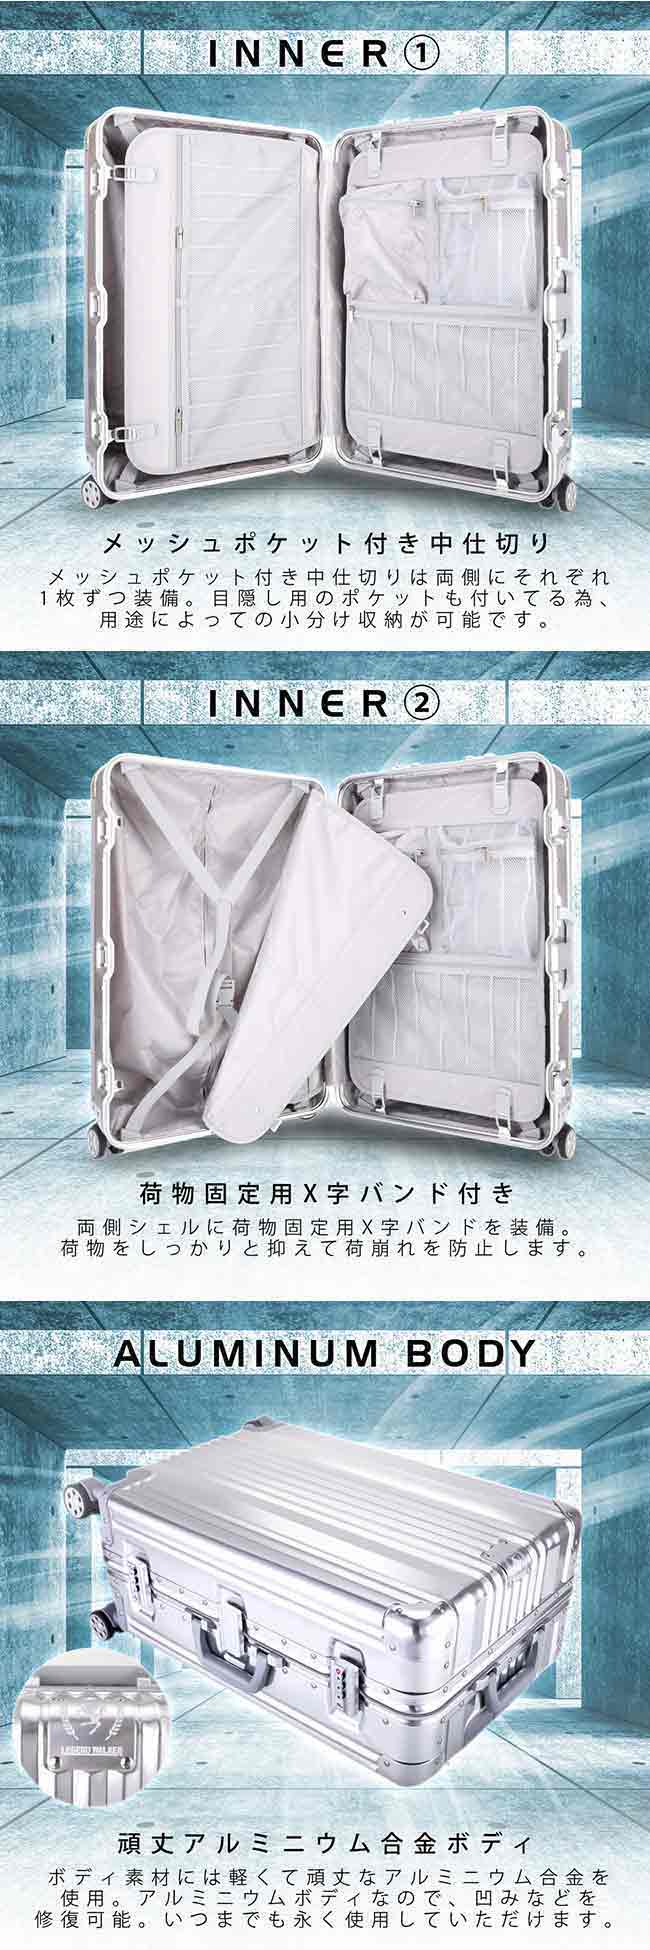 日本 LEGEND WALKER 1510-48-19吋全鋁鎂合金行李箱 子彈灰